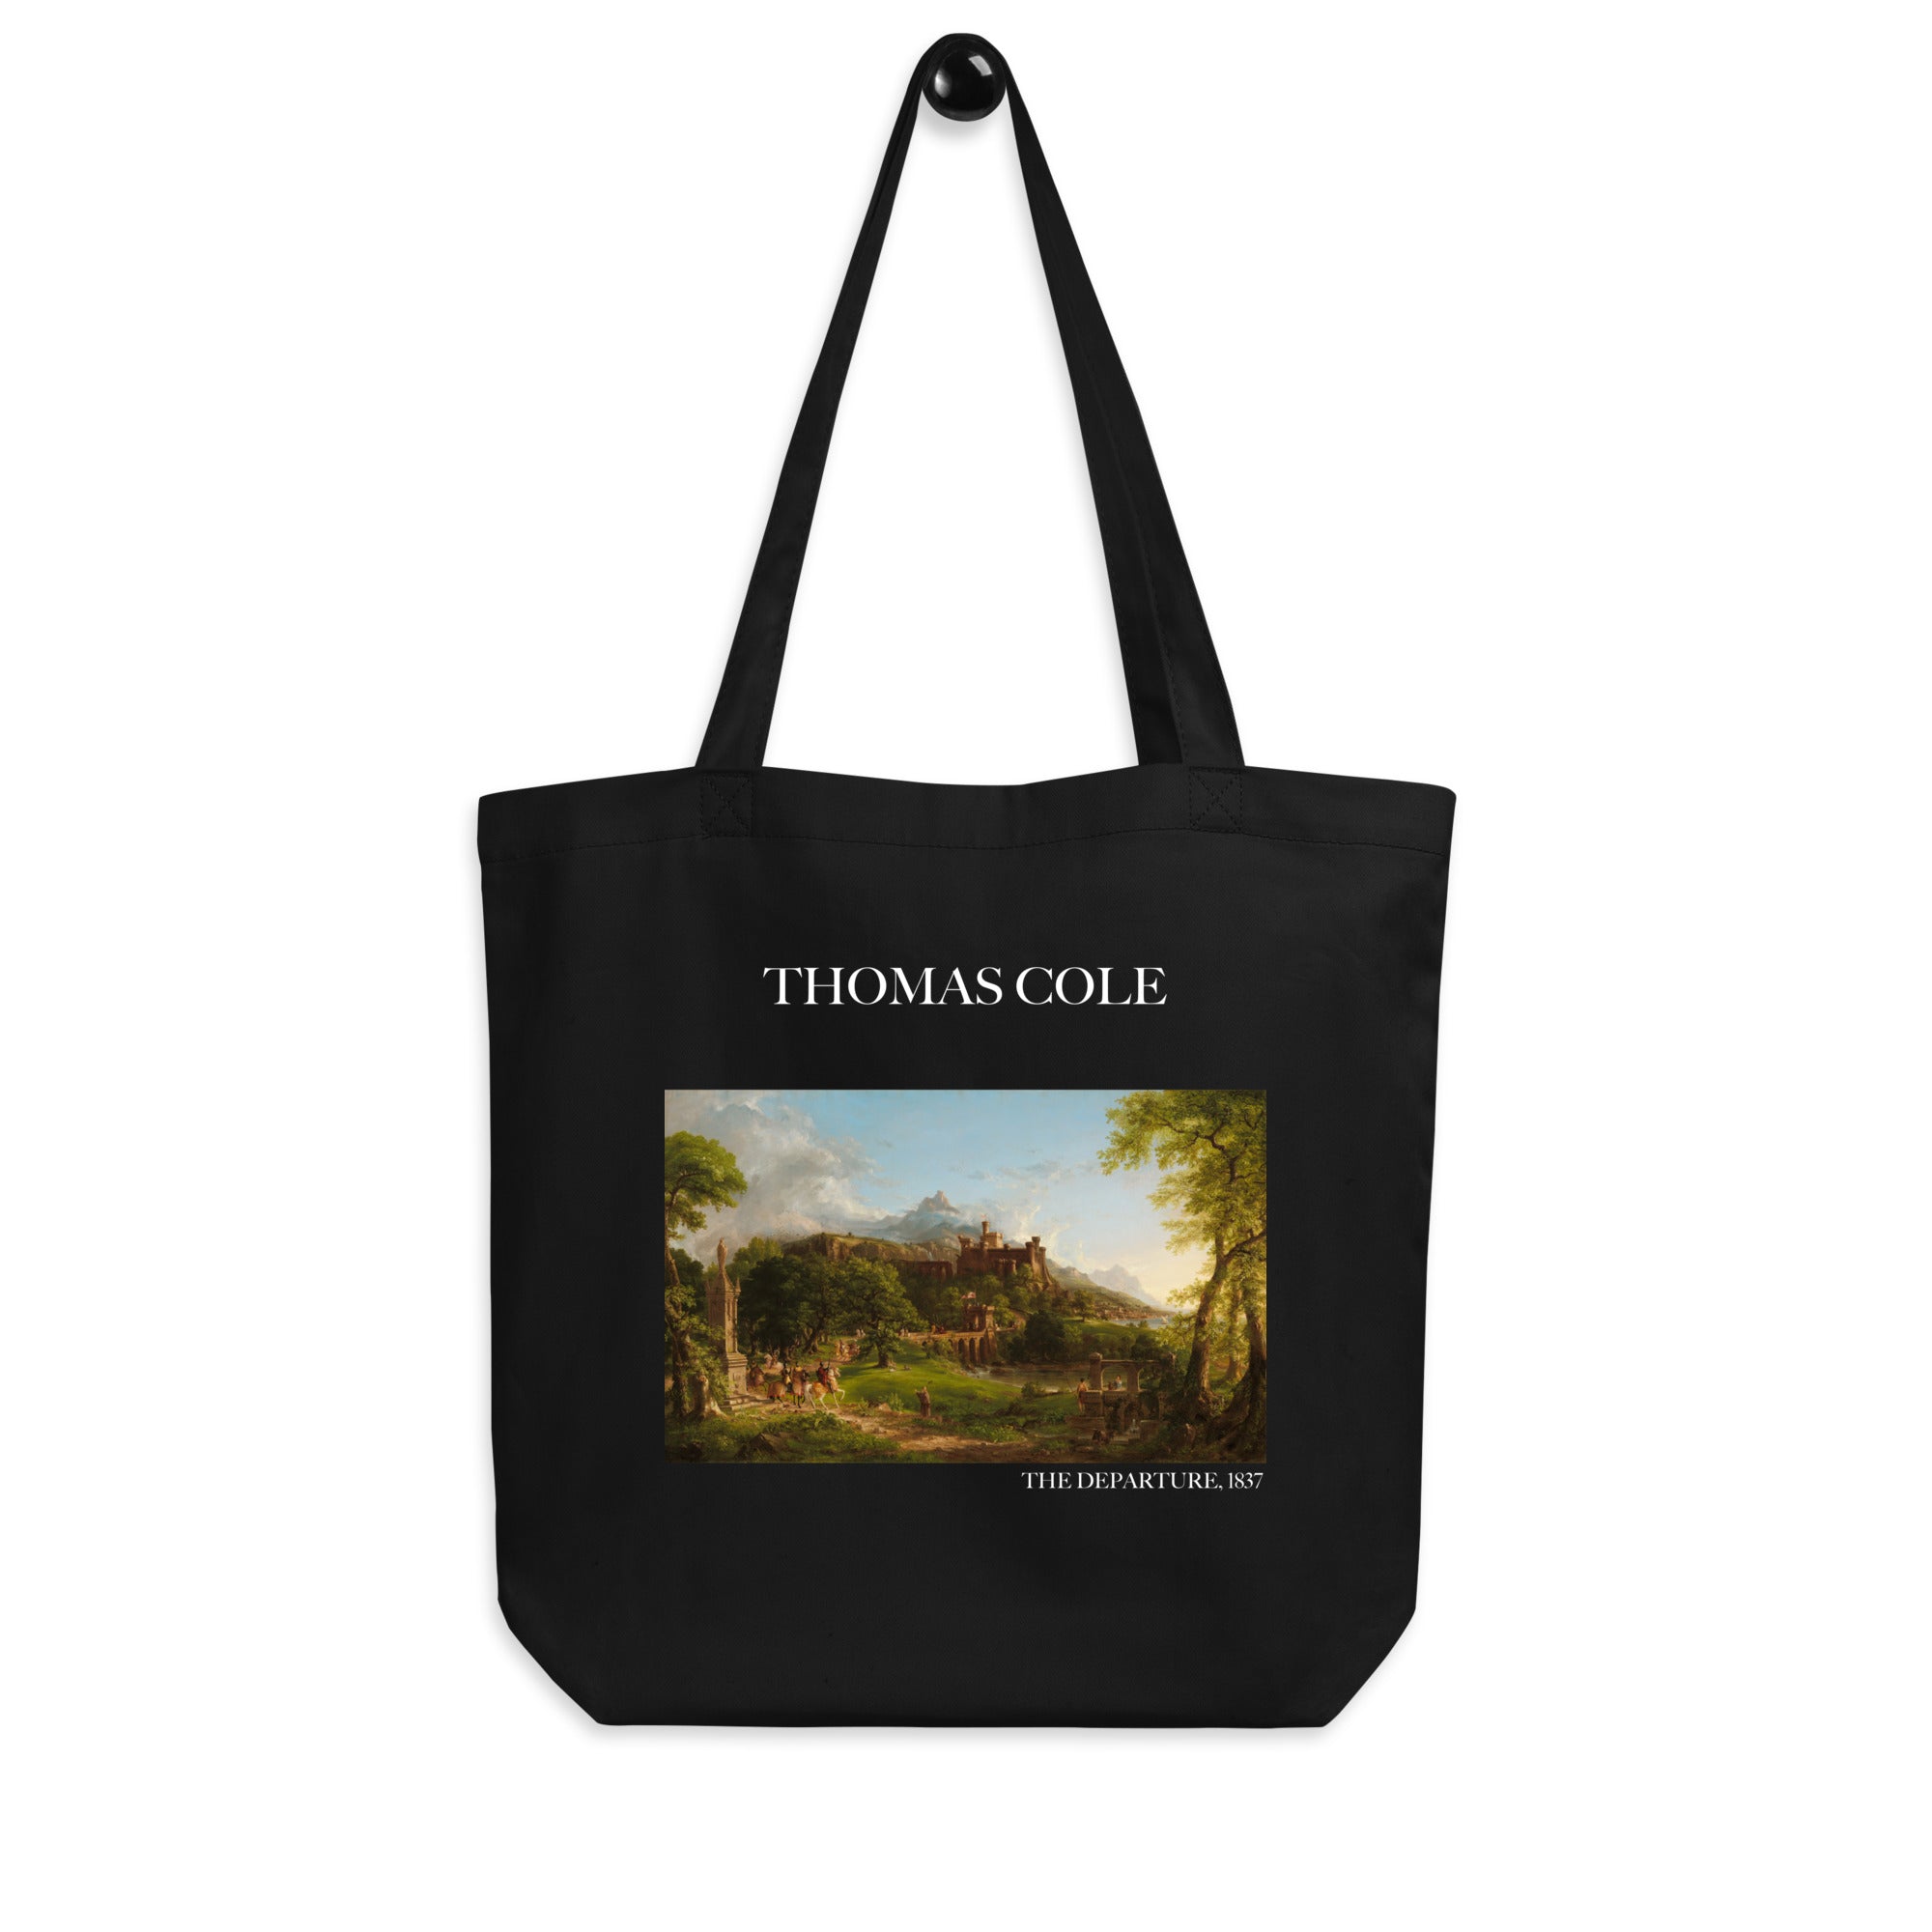 Thomas Cole 'The Departure' berühmtes Gemälde Tragetasche | Umweltfreundliche Kunst Tragetasche